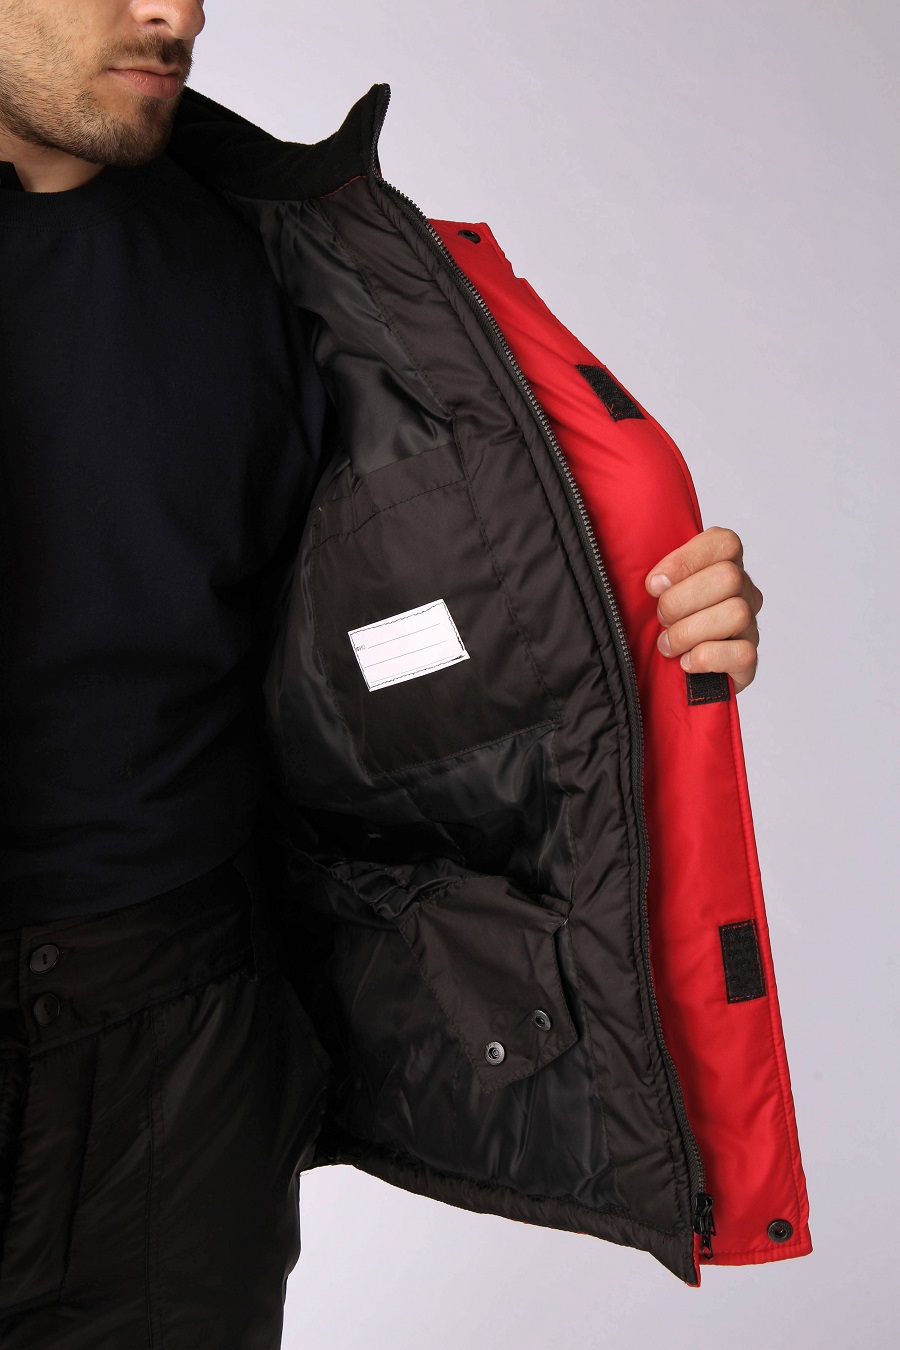 Куртка зимняя Европа (тк.Дюспо), красный/черный